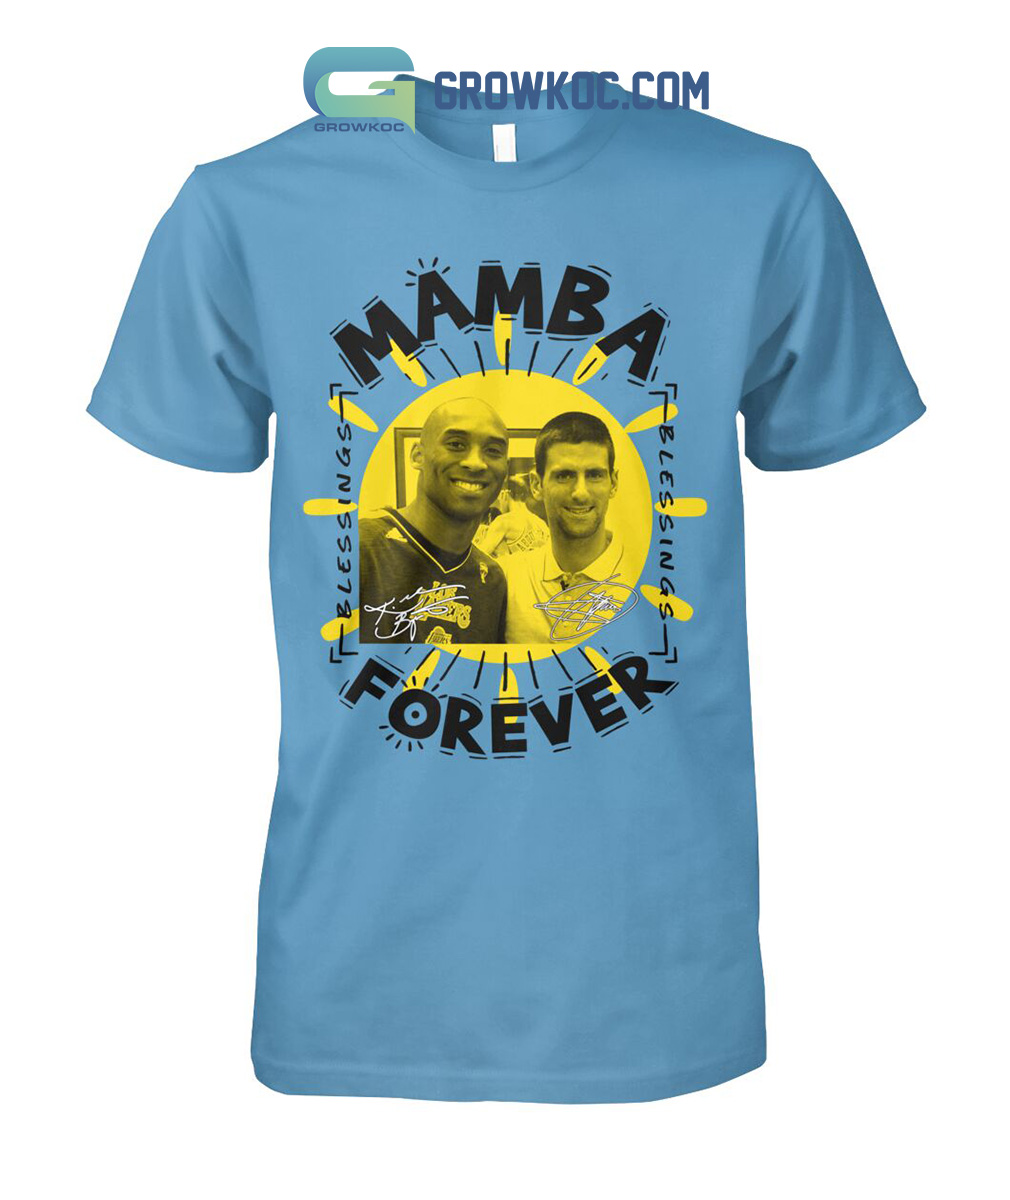 Djokovic Honors Kobe Bryant With 'Mamba Forever' Shirt - The New